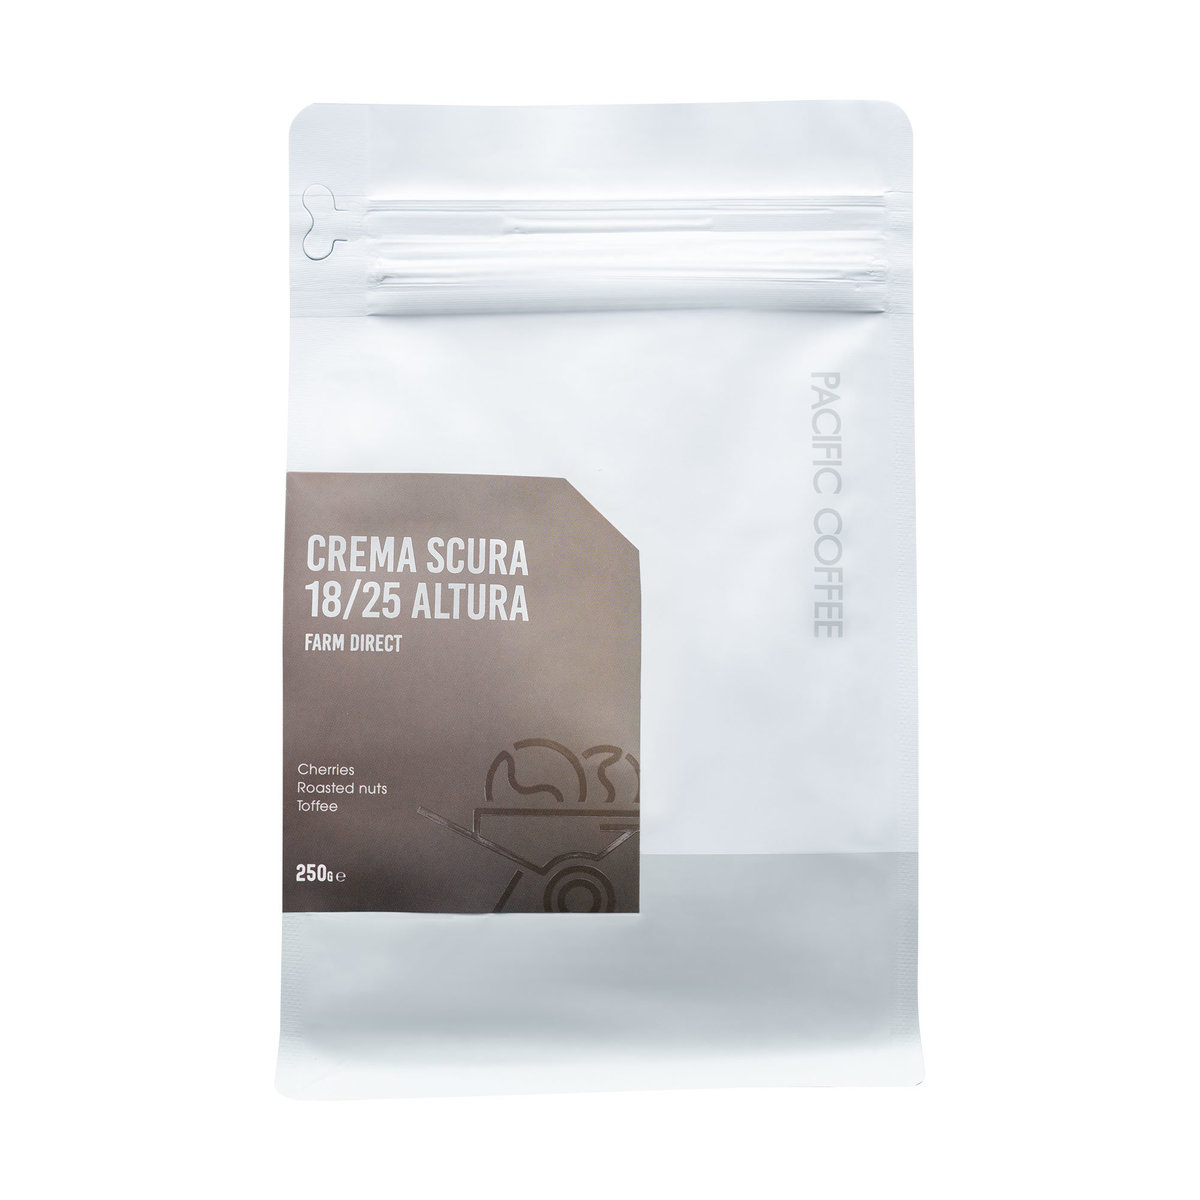 Pacific Coffee - Crema Scura 18/25 Altura - Farm Direct Coffee Bean (250g)